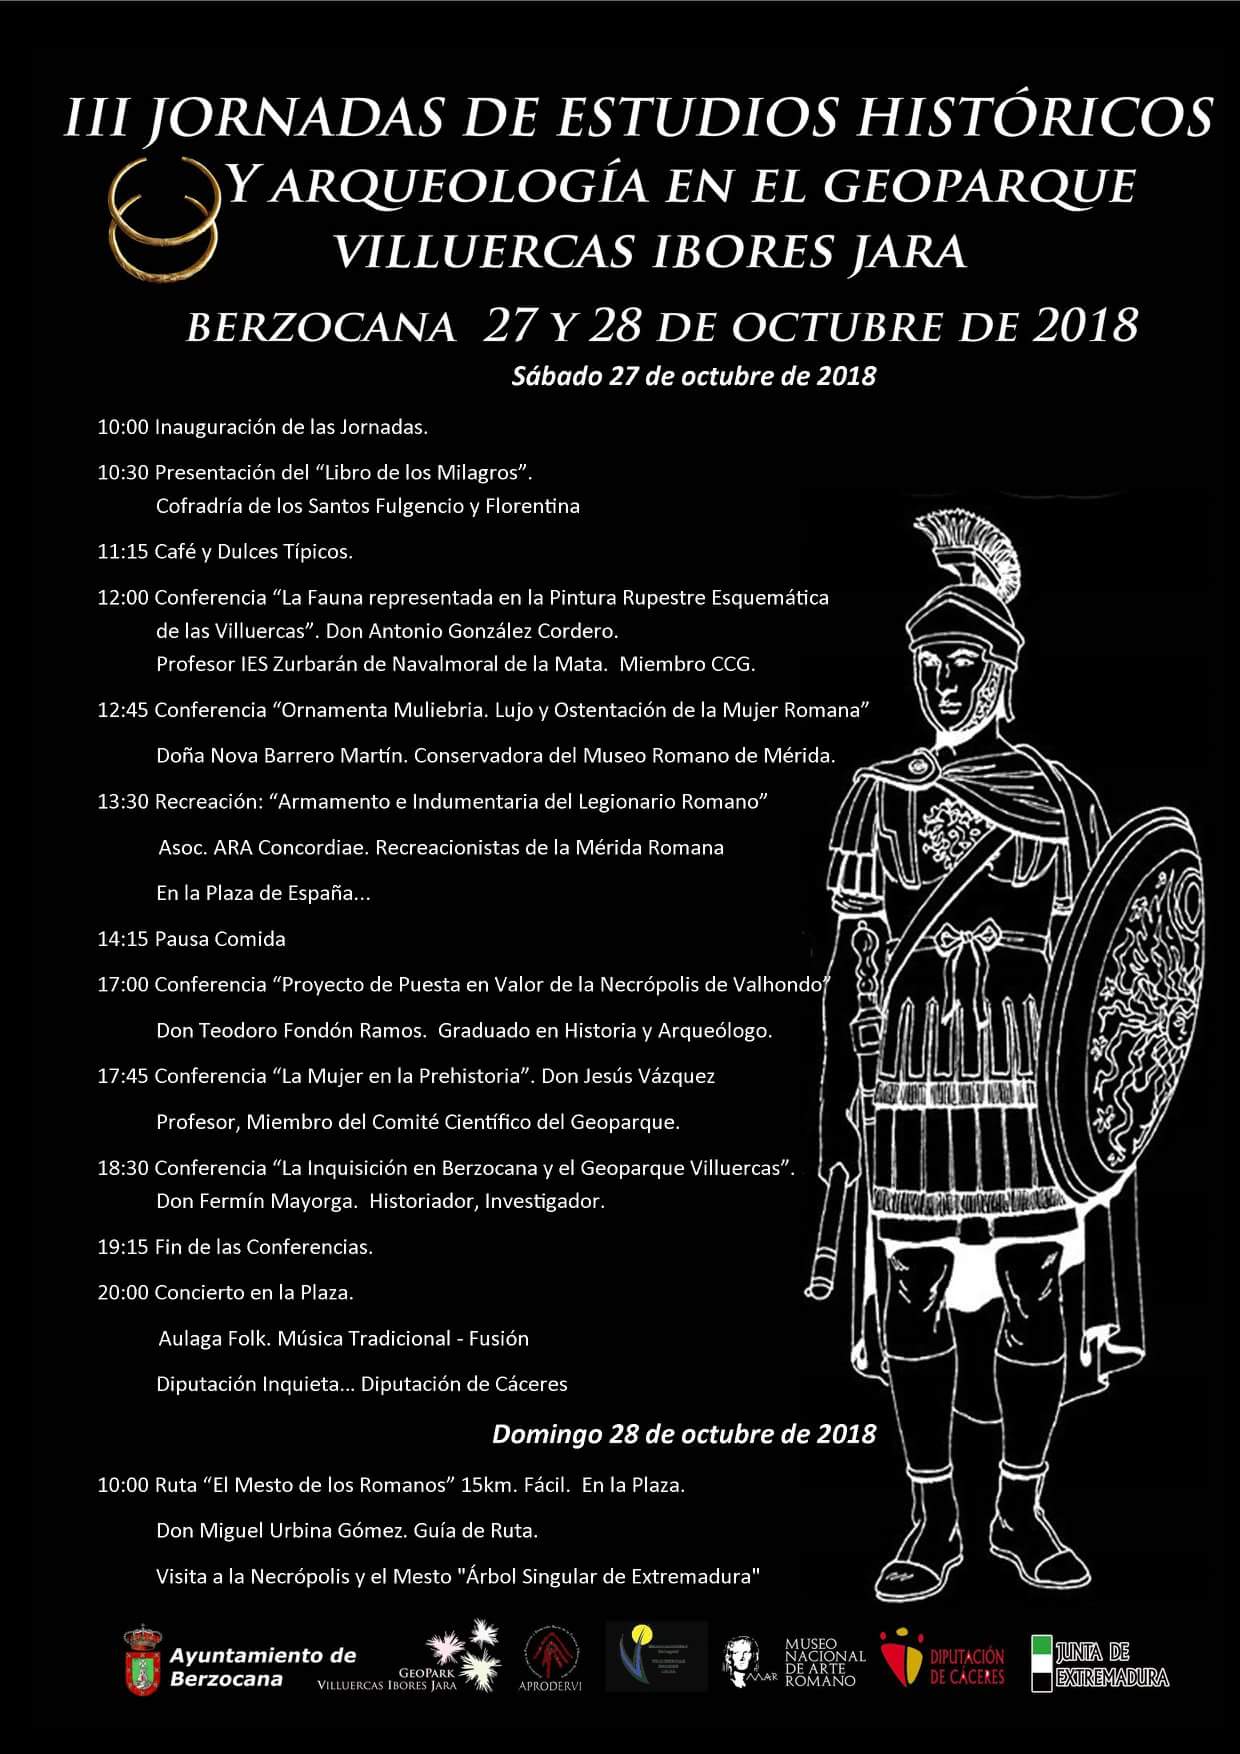 III Jornadas de estudios históricos y arqueología en el Geoparque Villuercas Ibores Jara